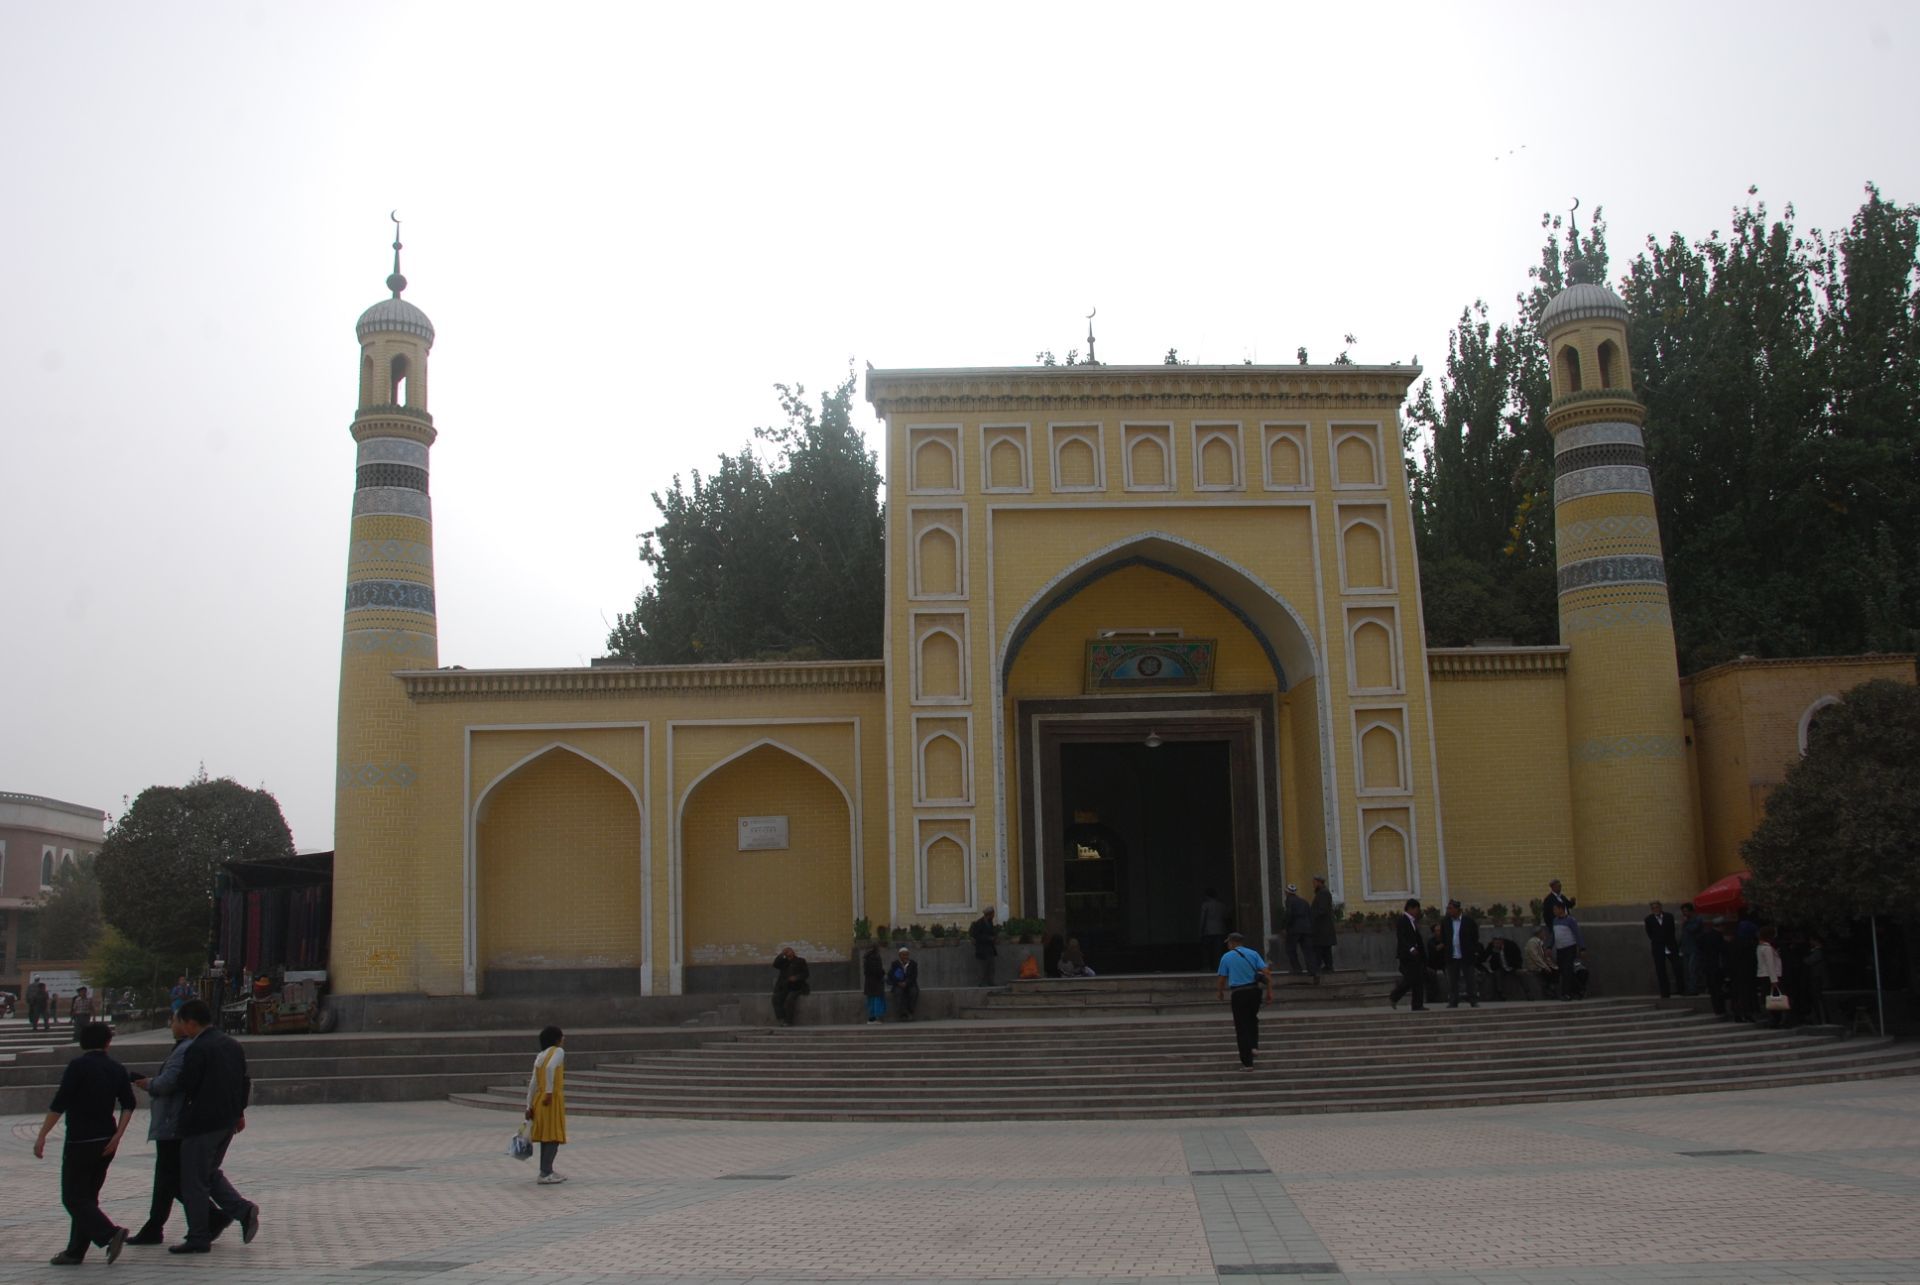 喀什市艾提尕尔清真寺攻略,喀什市艾提尕尔清真寺门票/游玩攻略/地址/图片/门票价格【携程攻略】